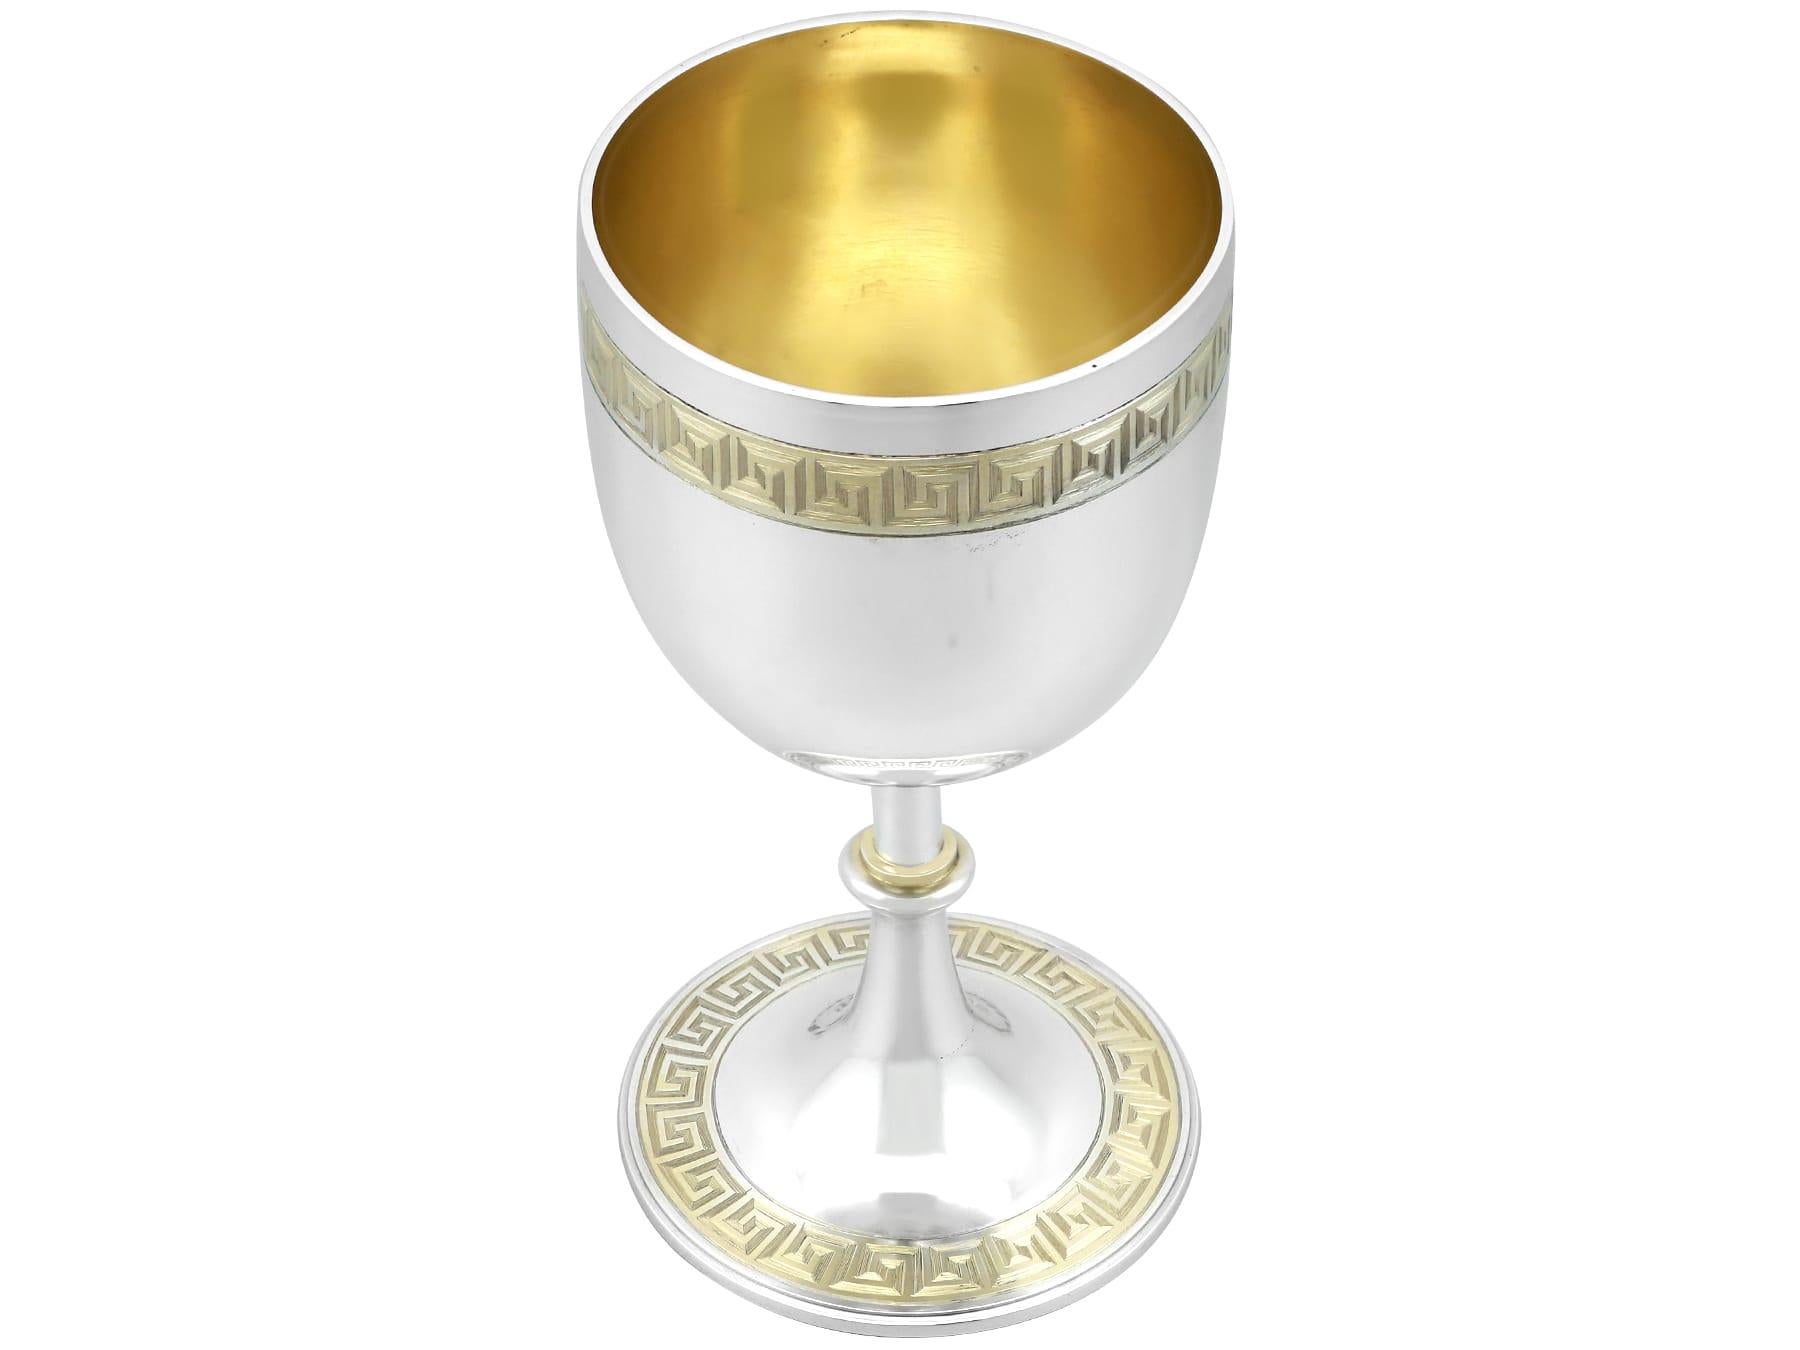 Eine außergewöhnliche, feine und beeindruckende antiken viktorianischen Sterling-Silber-Paket vergoldet Kelch; eine Ergänzung zu unserem Londoner Silber Wein und Getränke im Zusammenhang mit Silberwaren Sammlung.

Dieser außergewöhnliche, antike